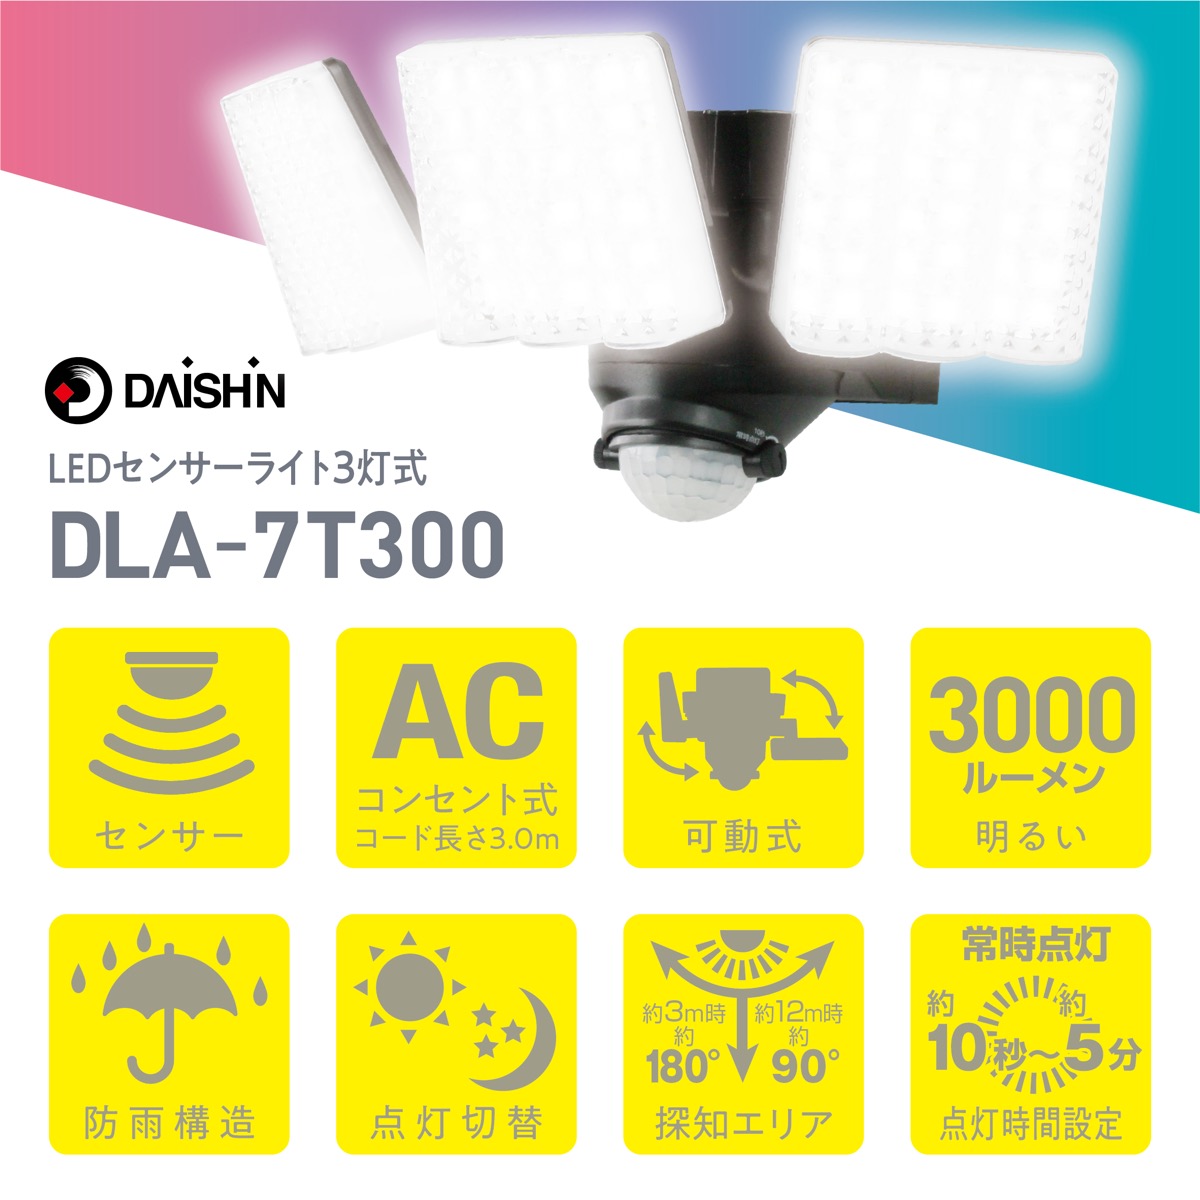  большой .DLA-7T300 AC источник питания LED сенсор свет 3 тип света фонарь перед входом защита от дождя структура передвижной тип наружный предотвращение преступления 3000 люмен яркий DAISHIN Daishin (06